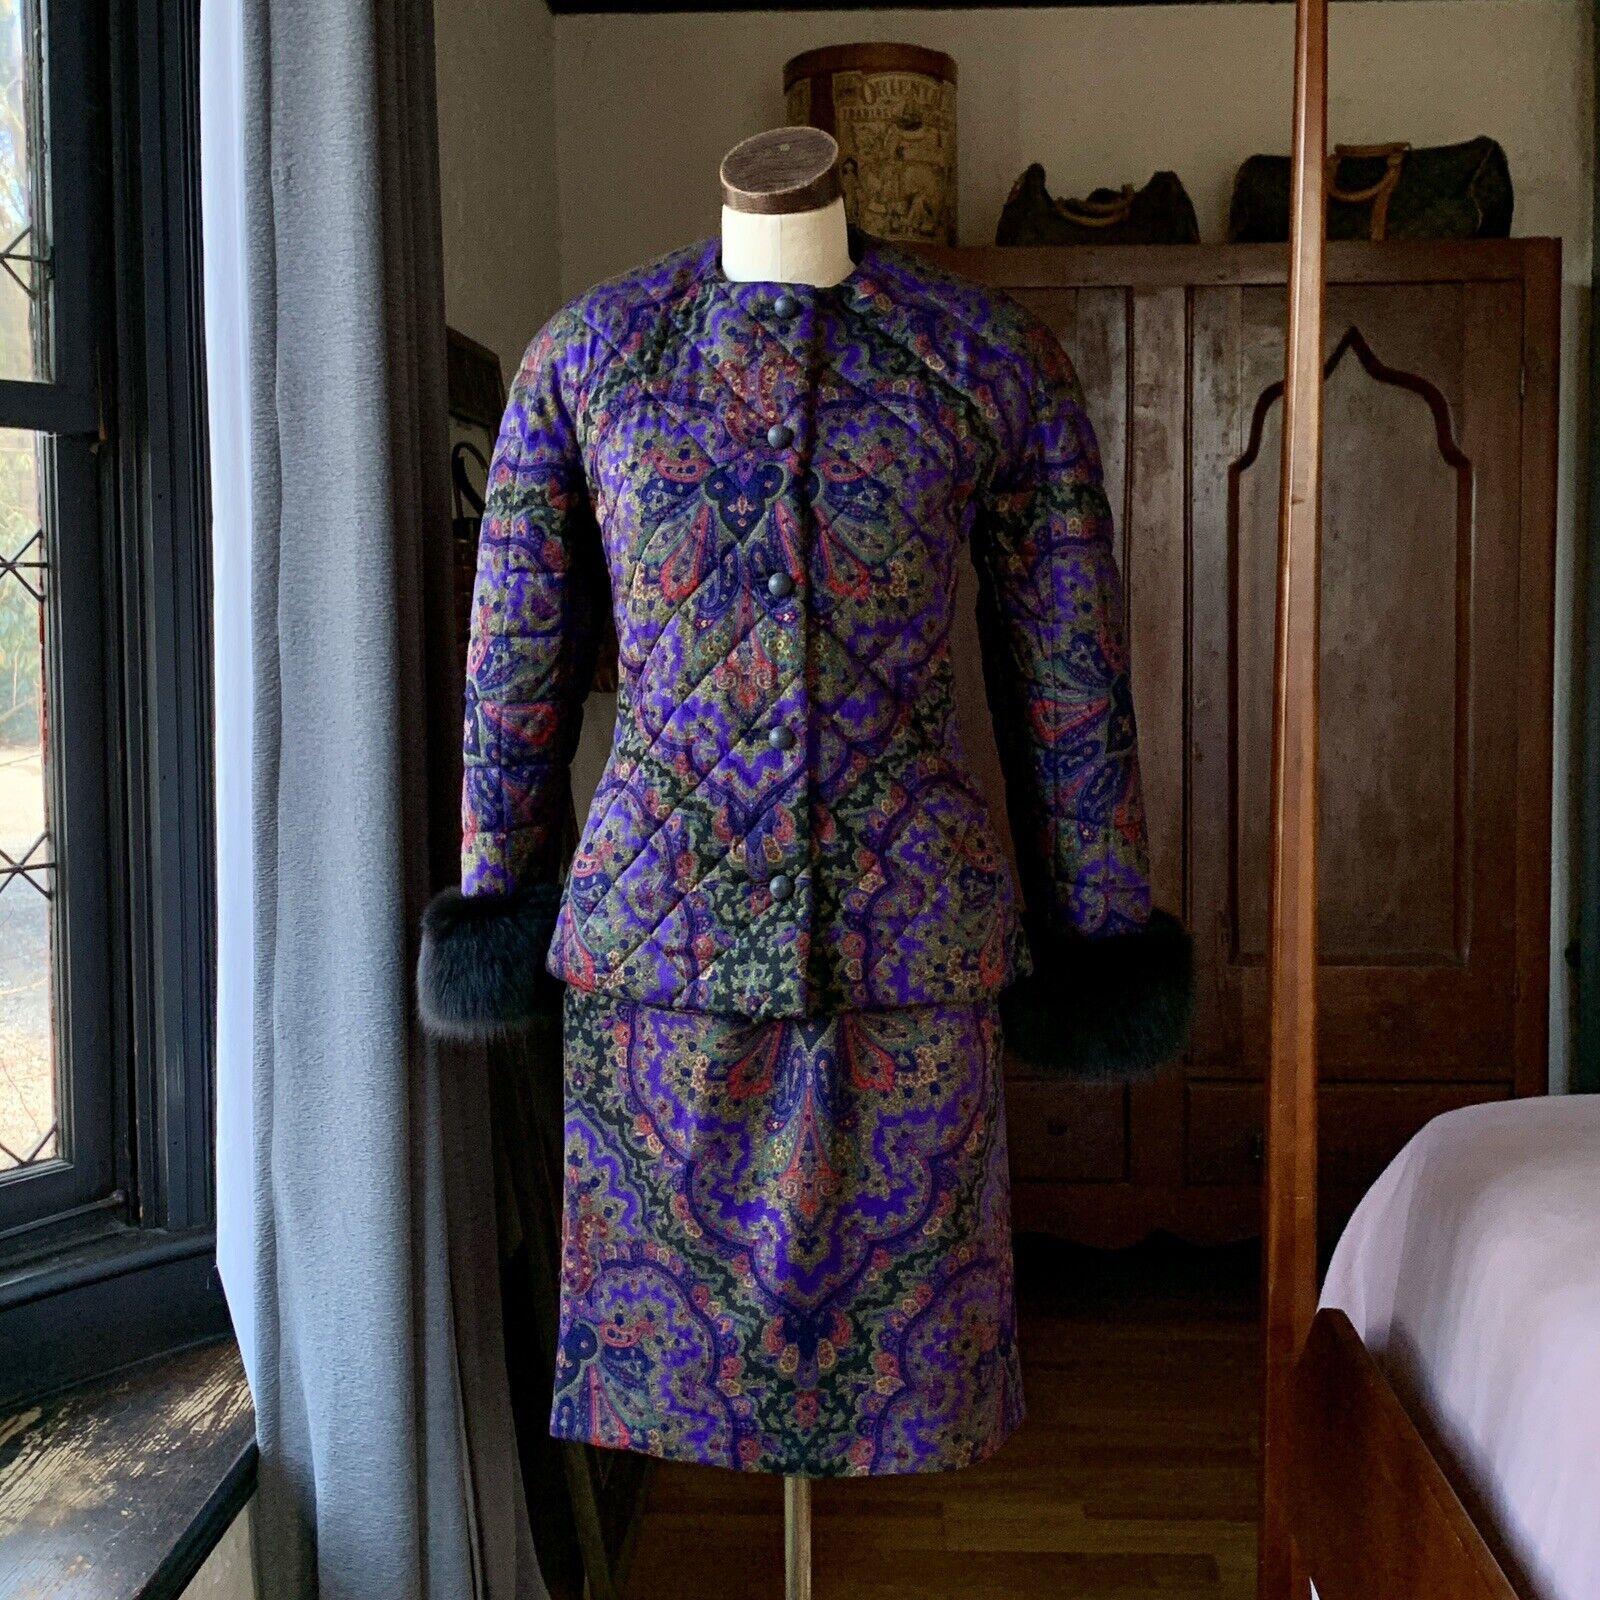 Gloria Sachs, Icone Suit, Vintage 1980's, 100% Pure Wool (Soft), Made in USA, Union Tag, Fully Lined.

Veste - matelassée, cinq boutons ronds en bois/argile, épaulettes, deux poches, poignets en fourrure noire souple,

Jupe - Fente au dos, crochets